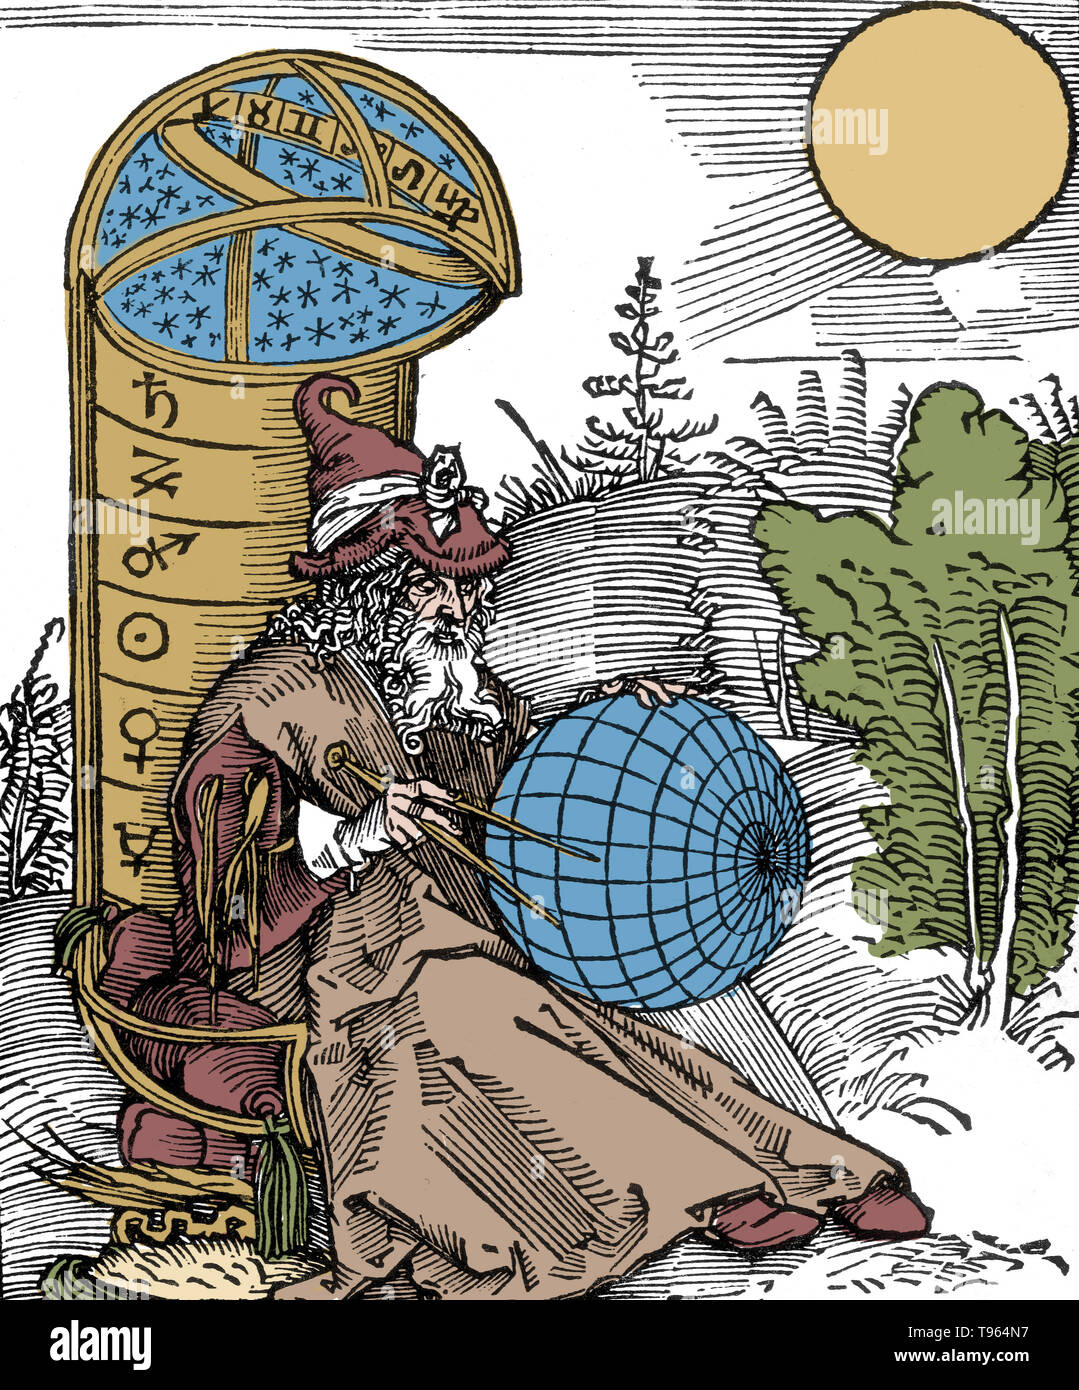 Eine Gravur der Astronom von Albrecht Dürer, von der Titelseite der Messahalah, De scientia motus Orbis (1504). Wie in vielen mittelalterlichen Abbildungen, die Ausarbeitung Kompass Hier ist ein Symbol der Religion sowie der Wissenschaft, in Bezug auf Gott als Architekt der Schöpfung. Mashallah ibn Athari (740-815 AD) war ein aus dem 8. Jahrhundert Persische jüdische Astrologen und Astronomen von der Stadt Basra. Stockfoto